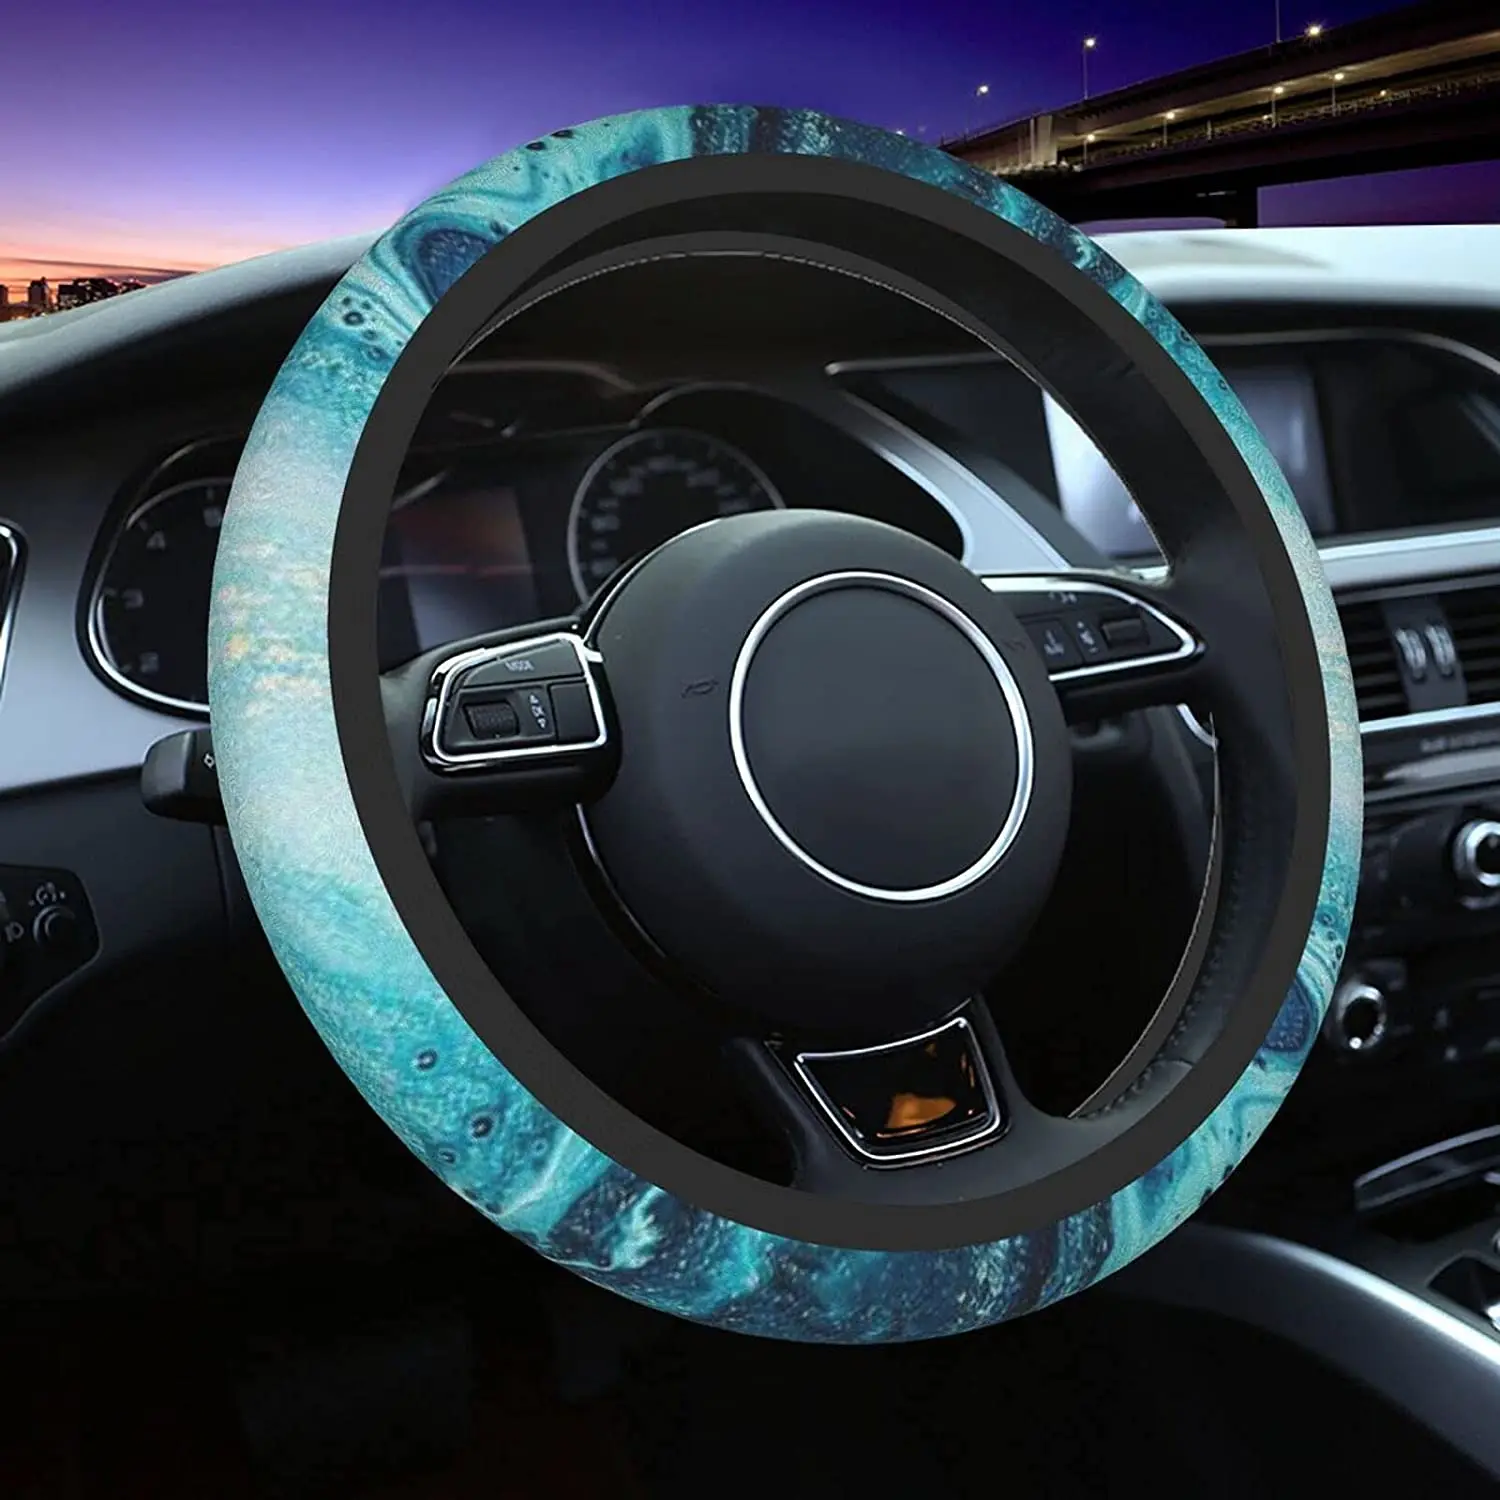 

Turquoise Teal Steering Wheel Cover Green For Women & Men Universal 15 Inches Anti Slip Neoprene Soft Steering Wheel Cover